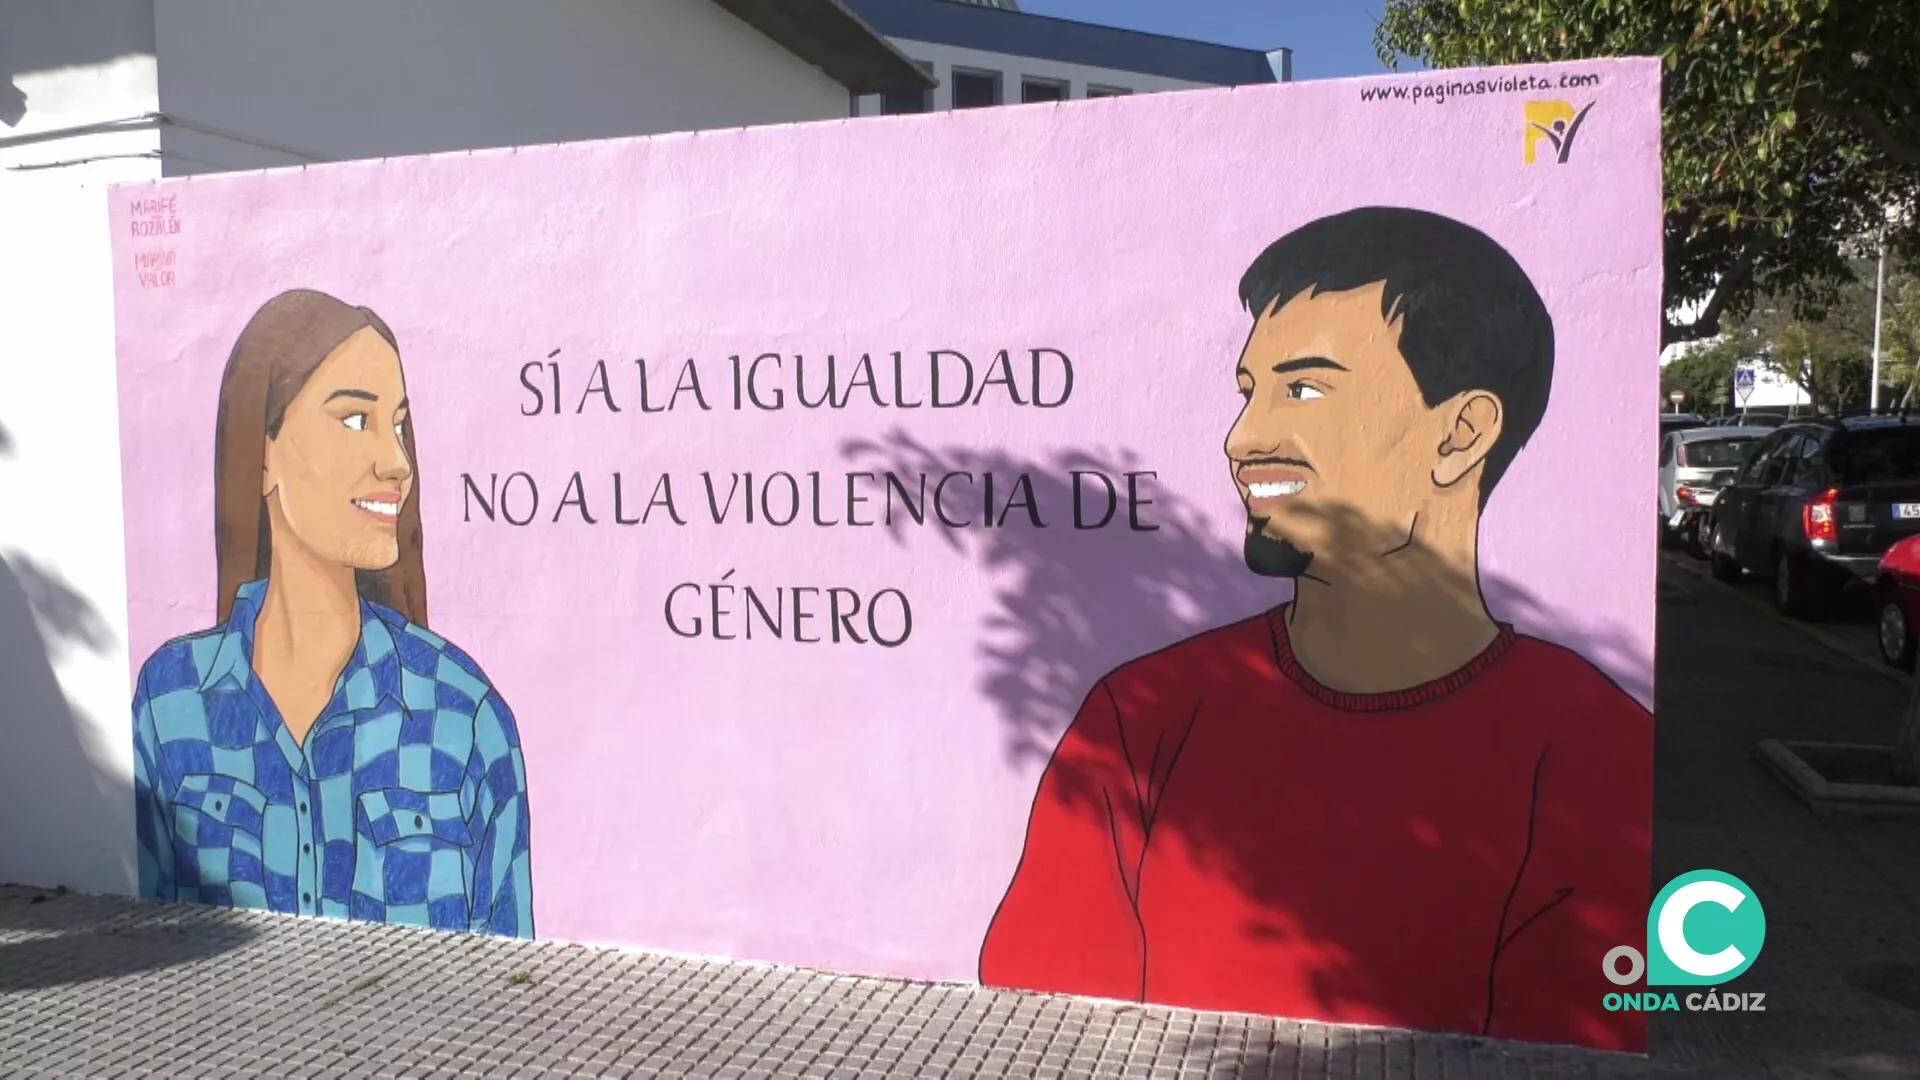 Imagen del nuevo mural en Afanas por la igualdad y contra la violencia de género